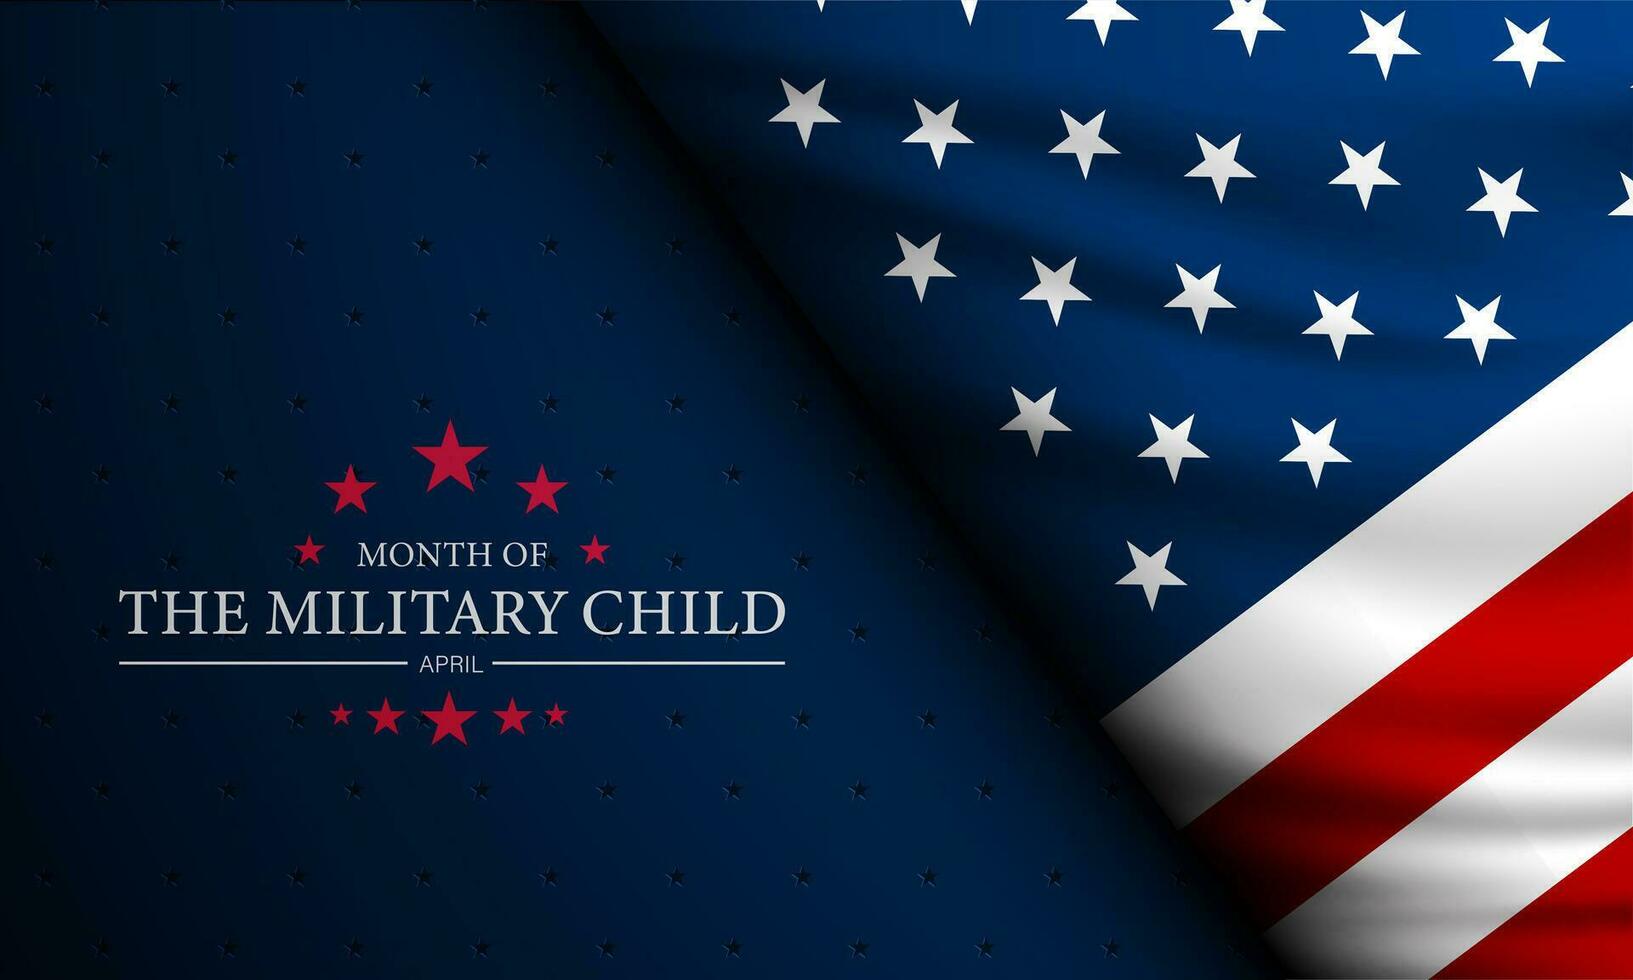 maand van de leger kind is april achtergrond vector illustratieillustrator artwork